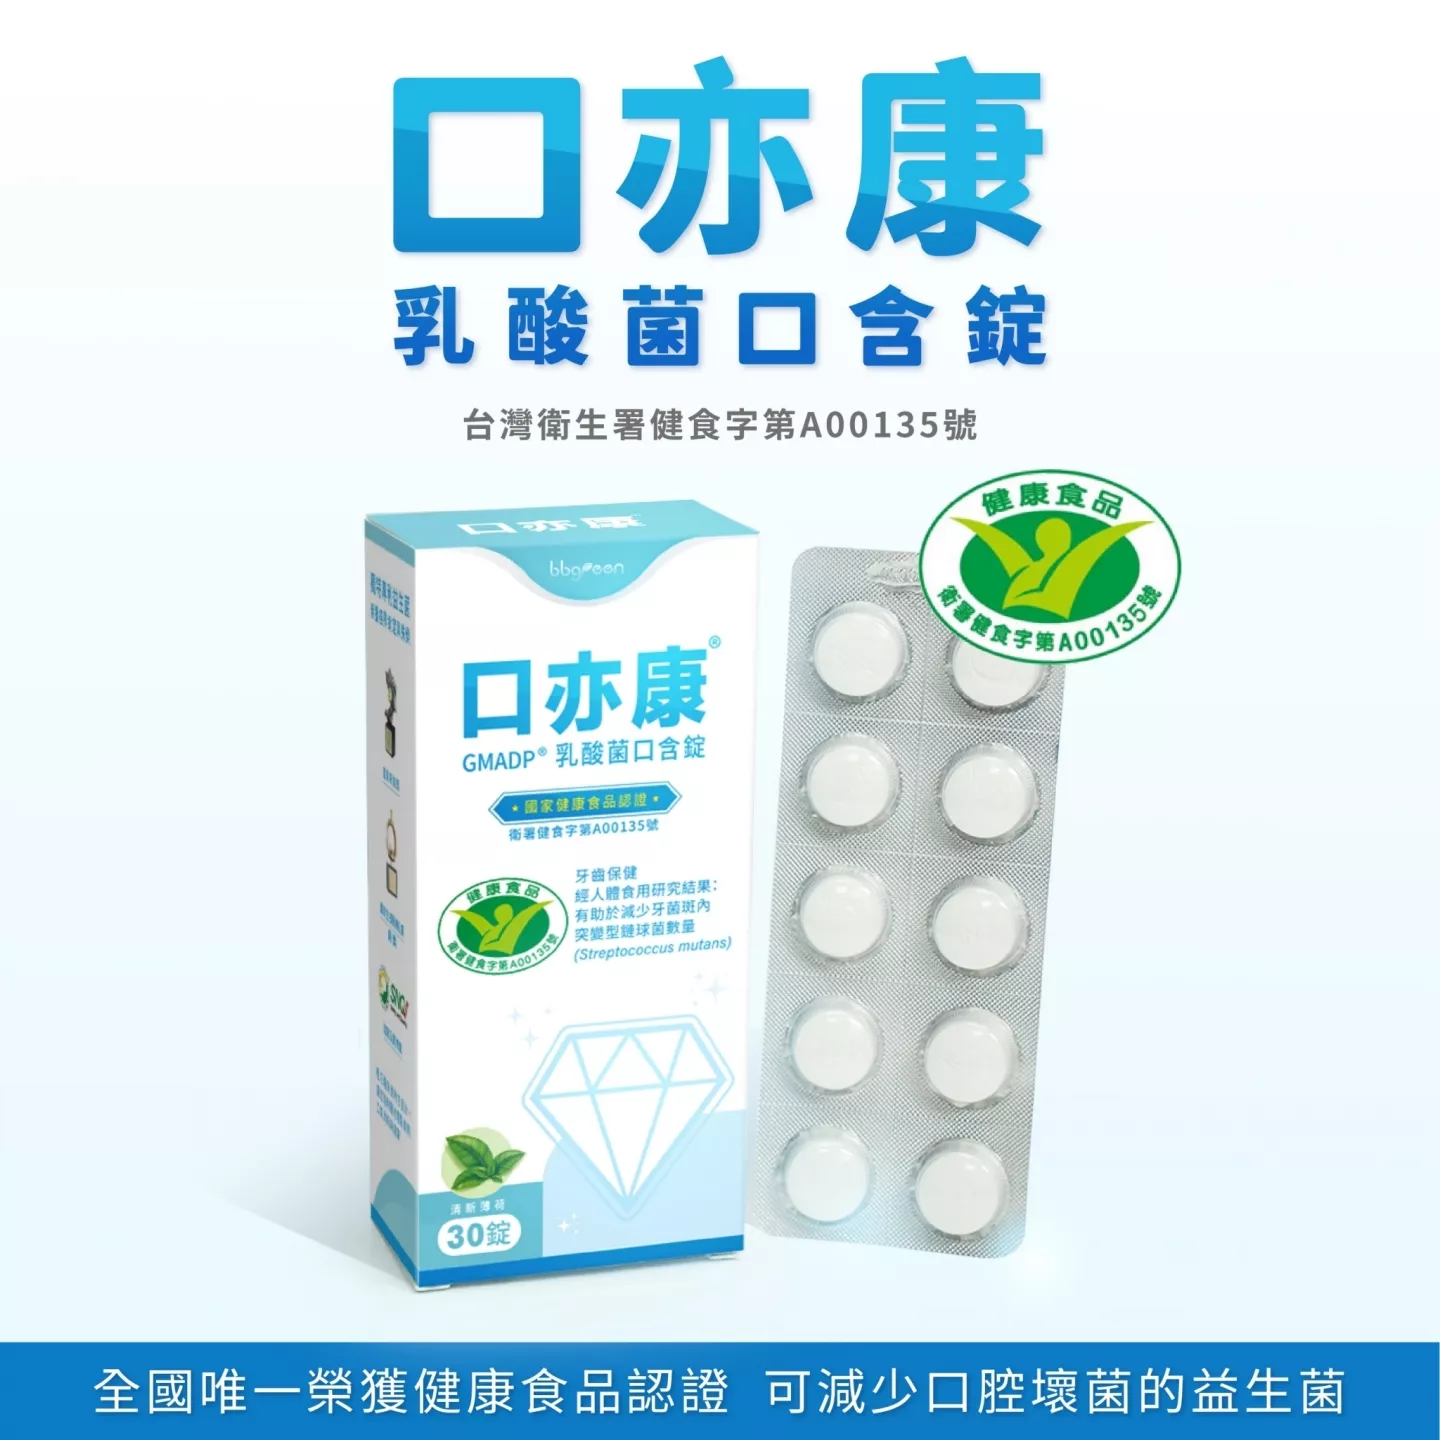 口亦康 乳酸菌口含錠 台灣衛生署健食字第A00135號 全國唯一可減少口腔壞菌的益生菌